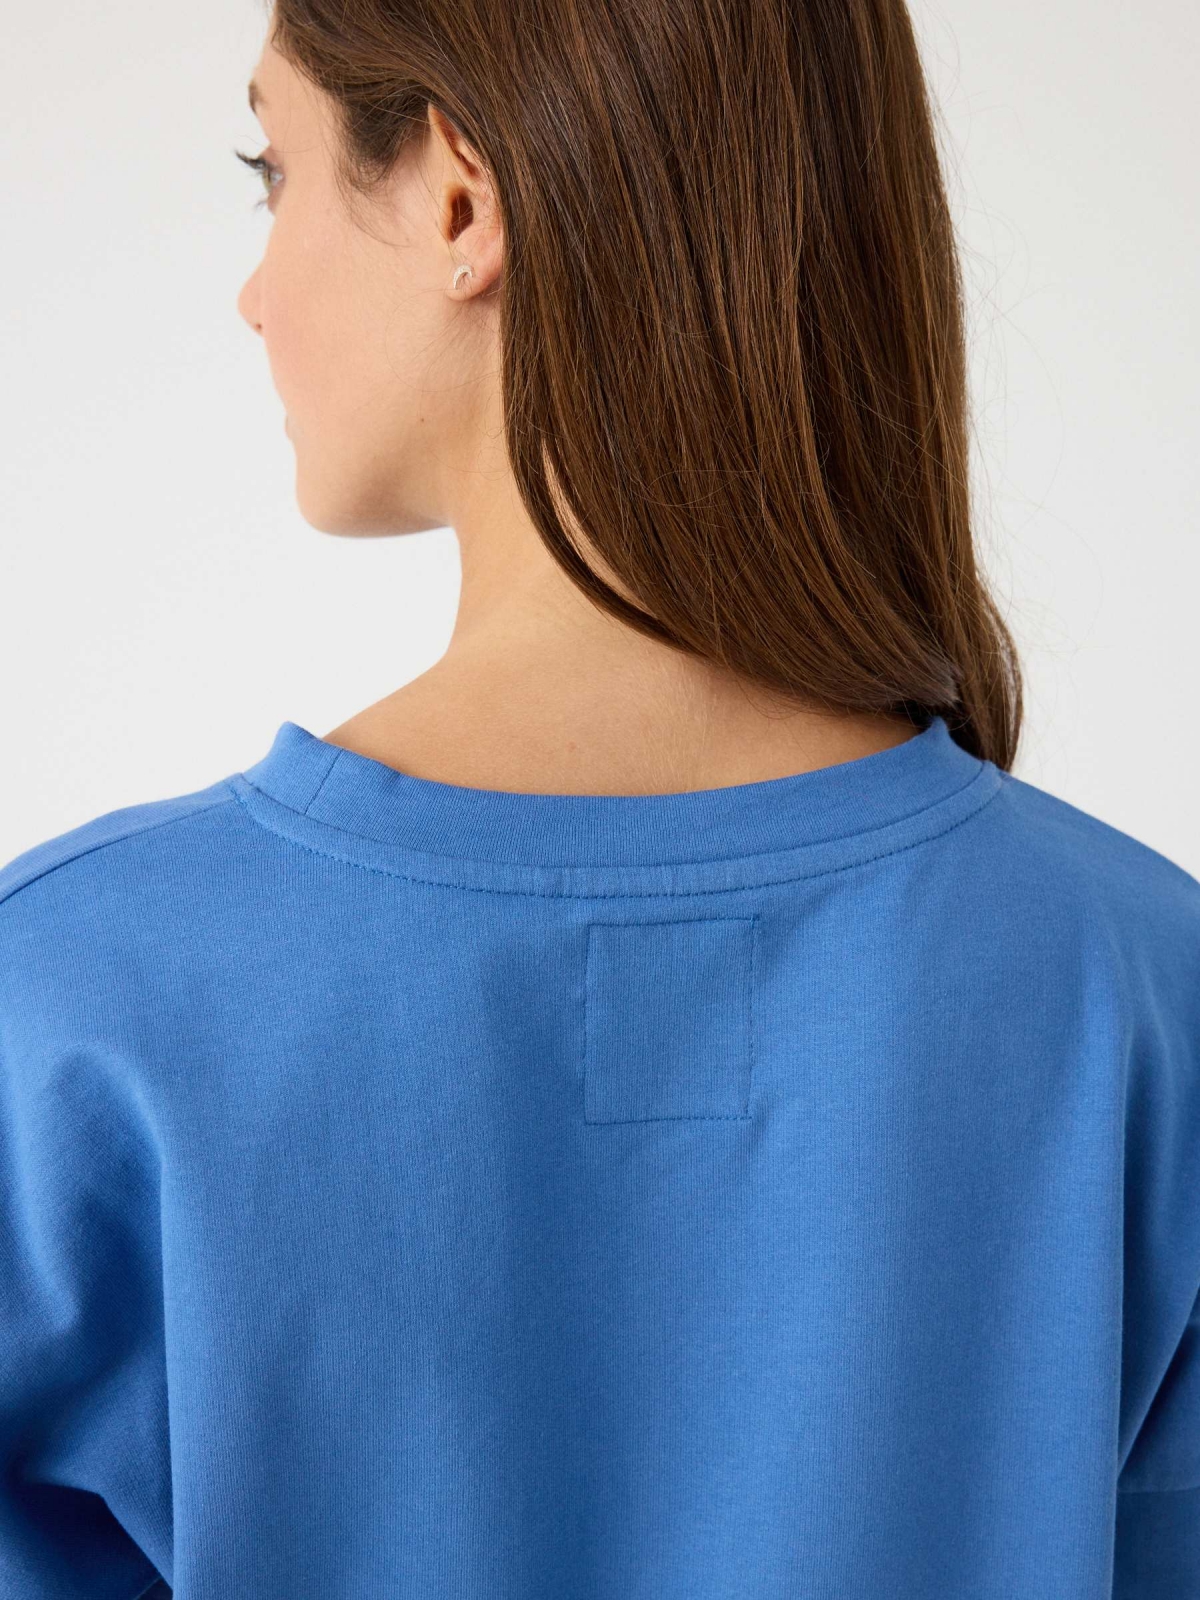 Basic round neck sweatshirt blue detail view